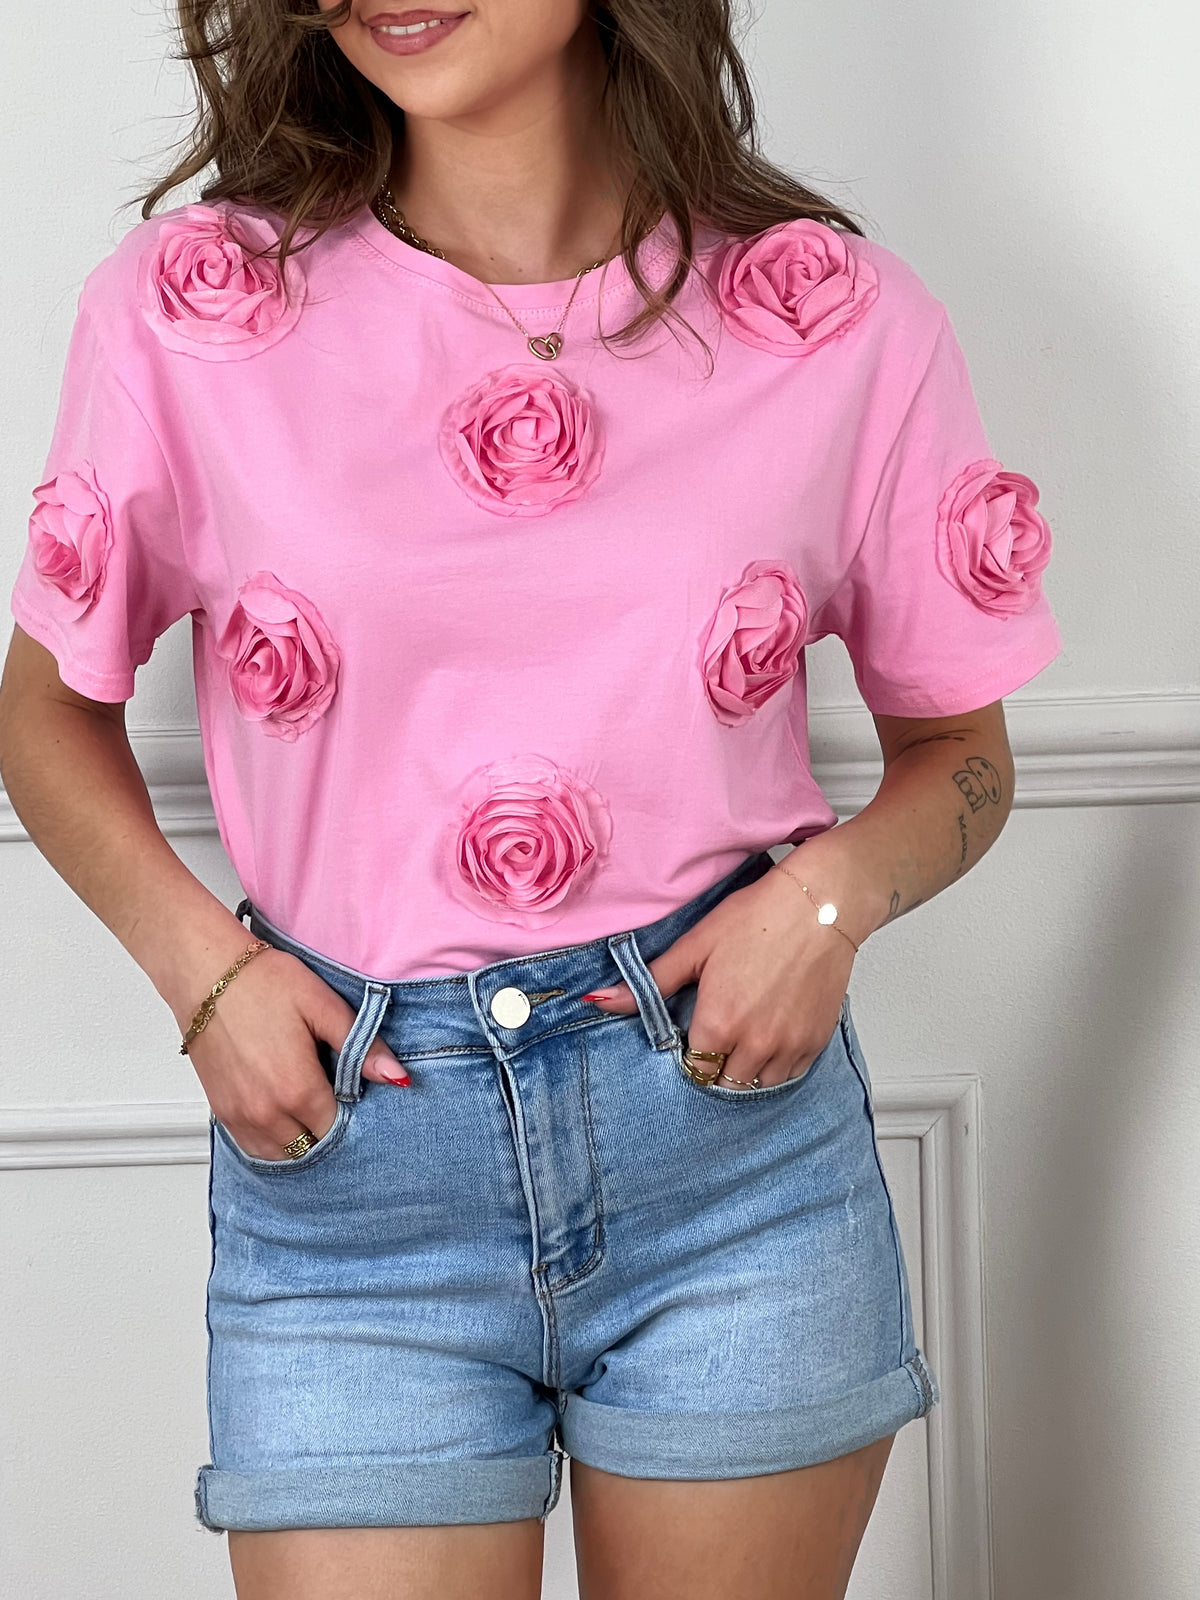 Découvrez notre charmant tee-shirt rose Felicie pour femmes ! Avec ses manches courtes, son col rond et ses fleurs en relief sur le devant, il vous offrira un look à la fois féminin et élégant. Ajoutez une touche de couleur à votre tenue avec notre tee-shirt confortable et tendance.